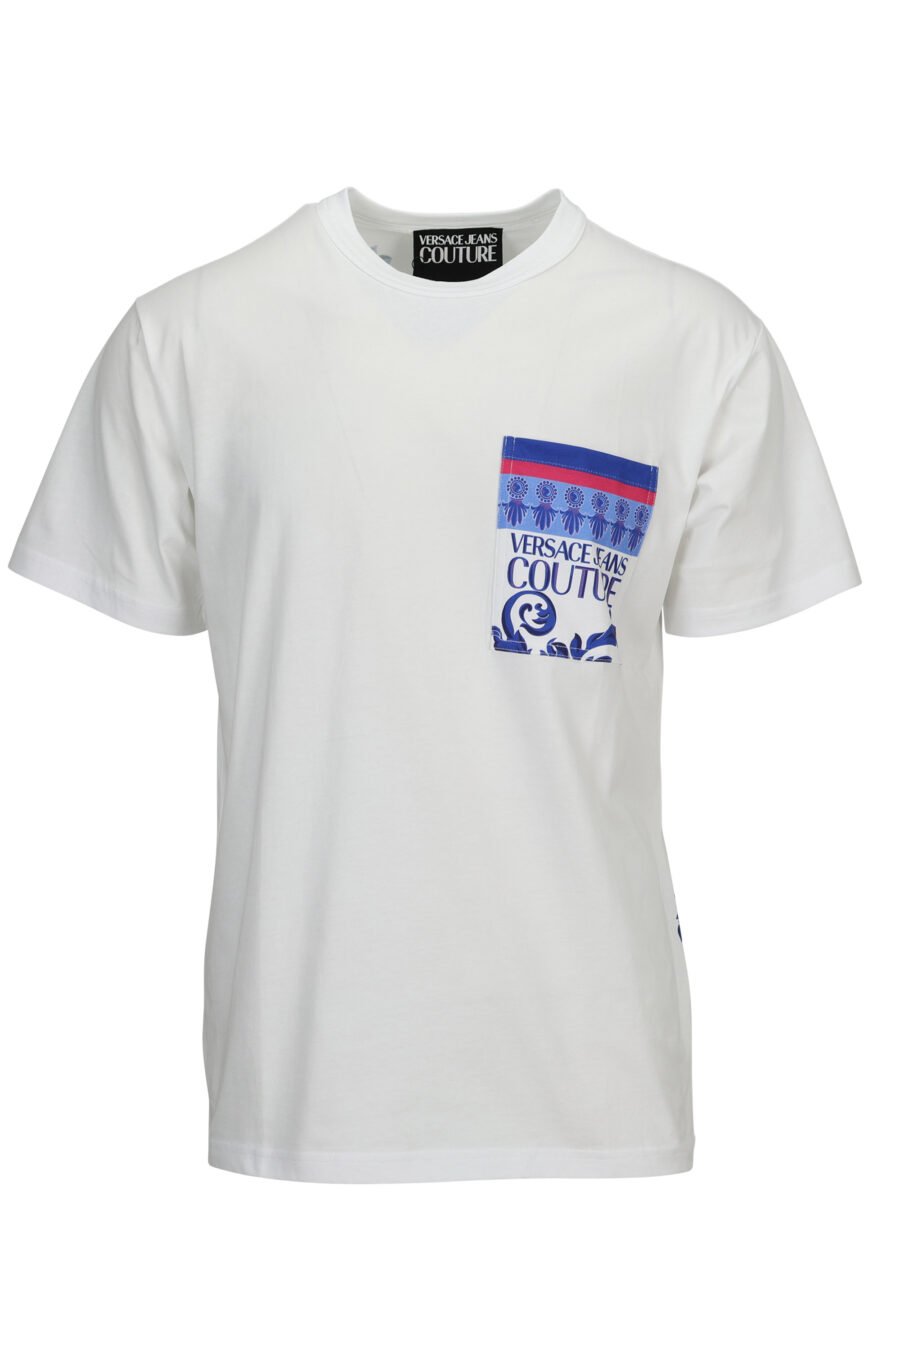 T-shirt branca com bolso para o logótipo barroco azul - 8052019611250